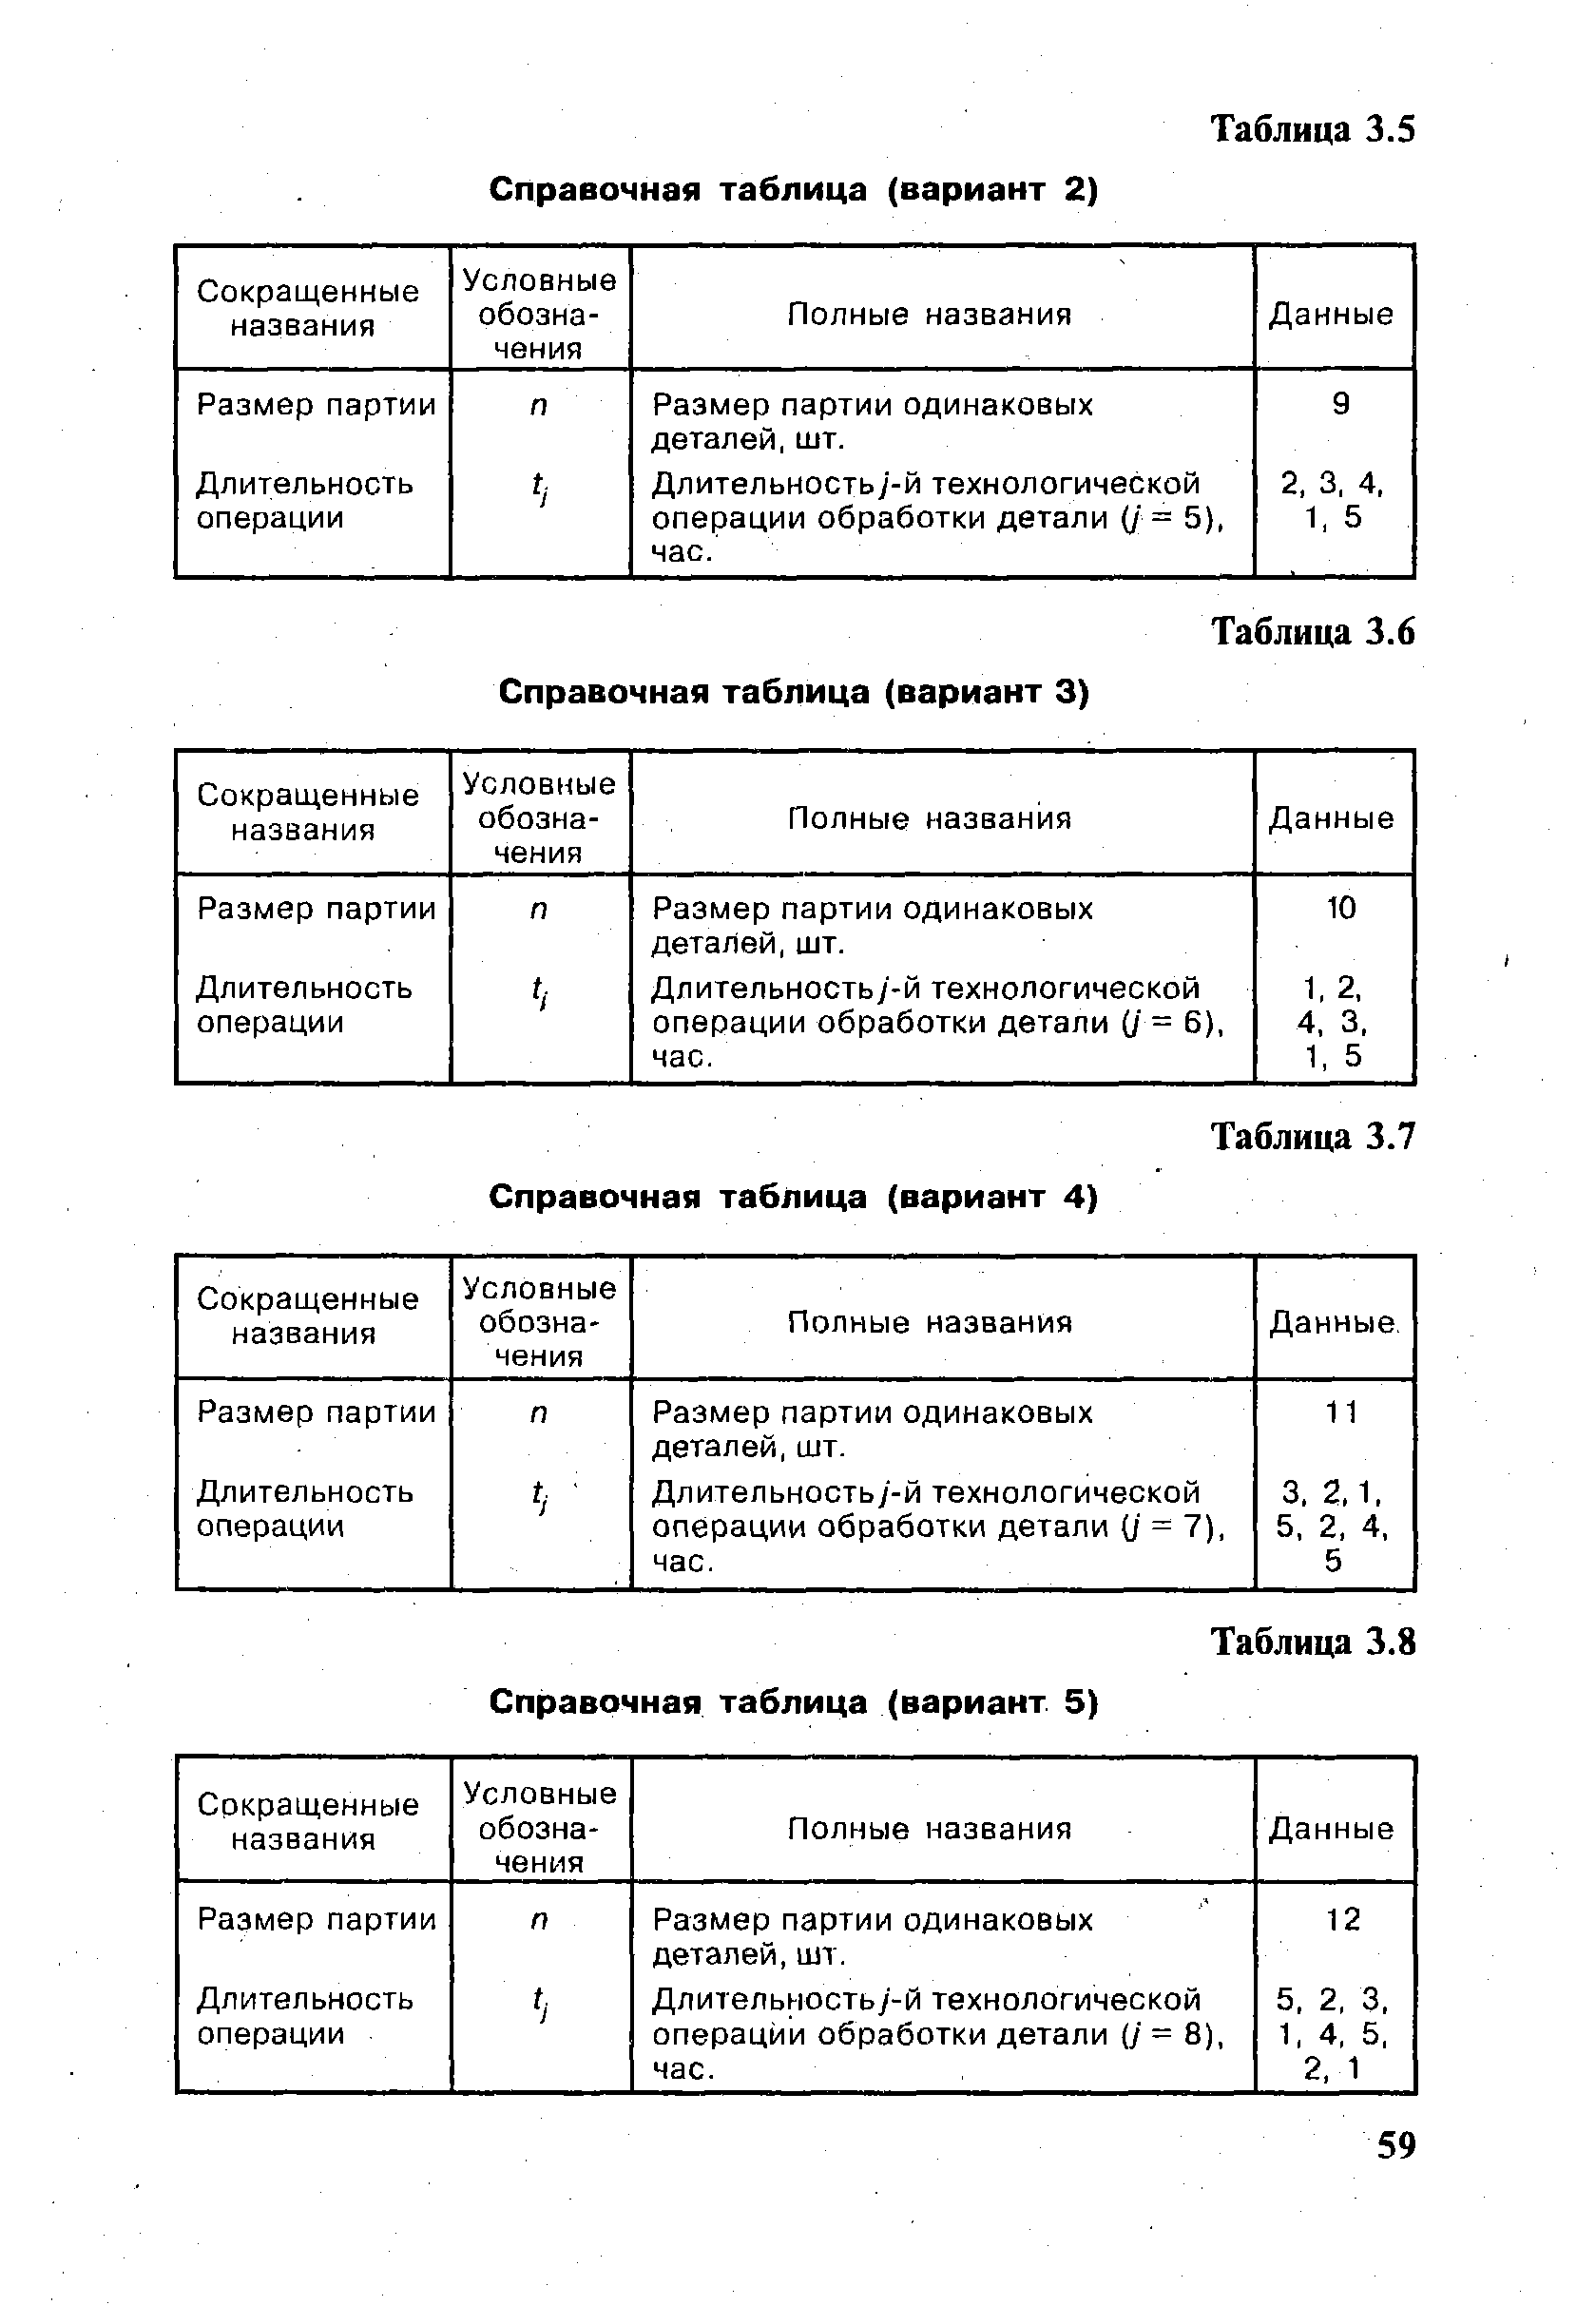 Таблица 3.6 Справочная таблица (вариант 3)
